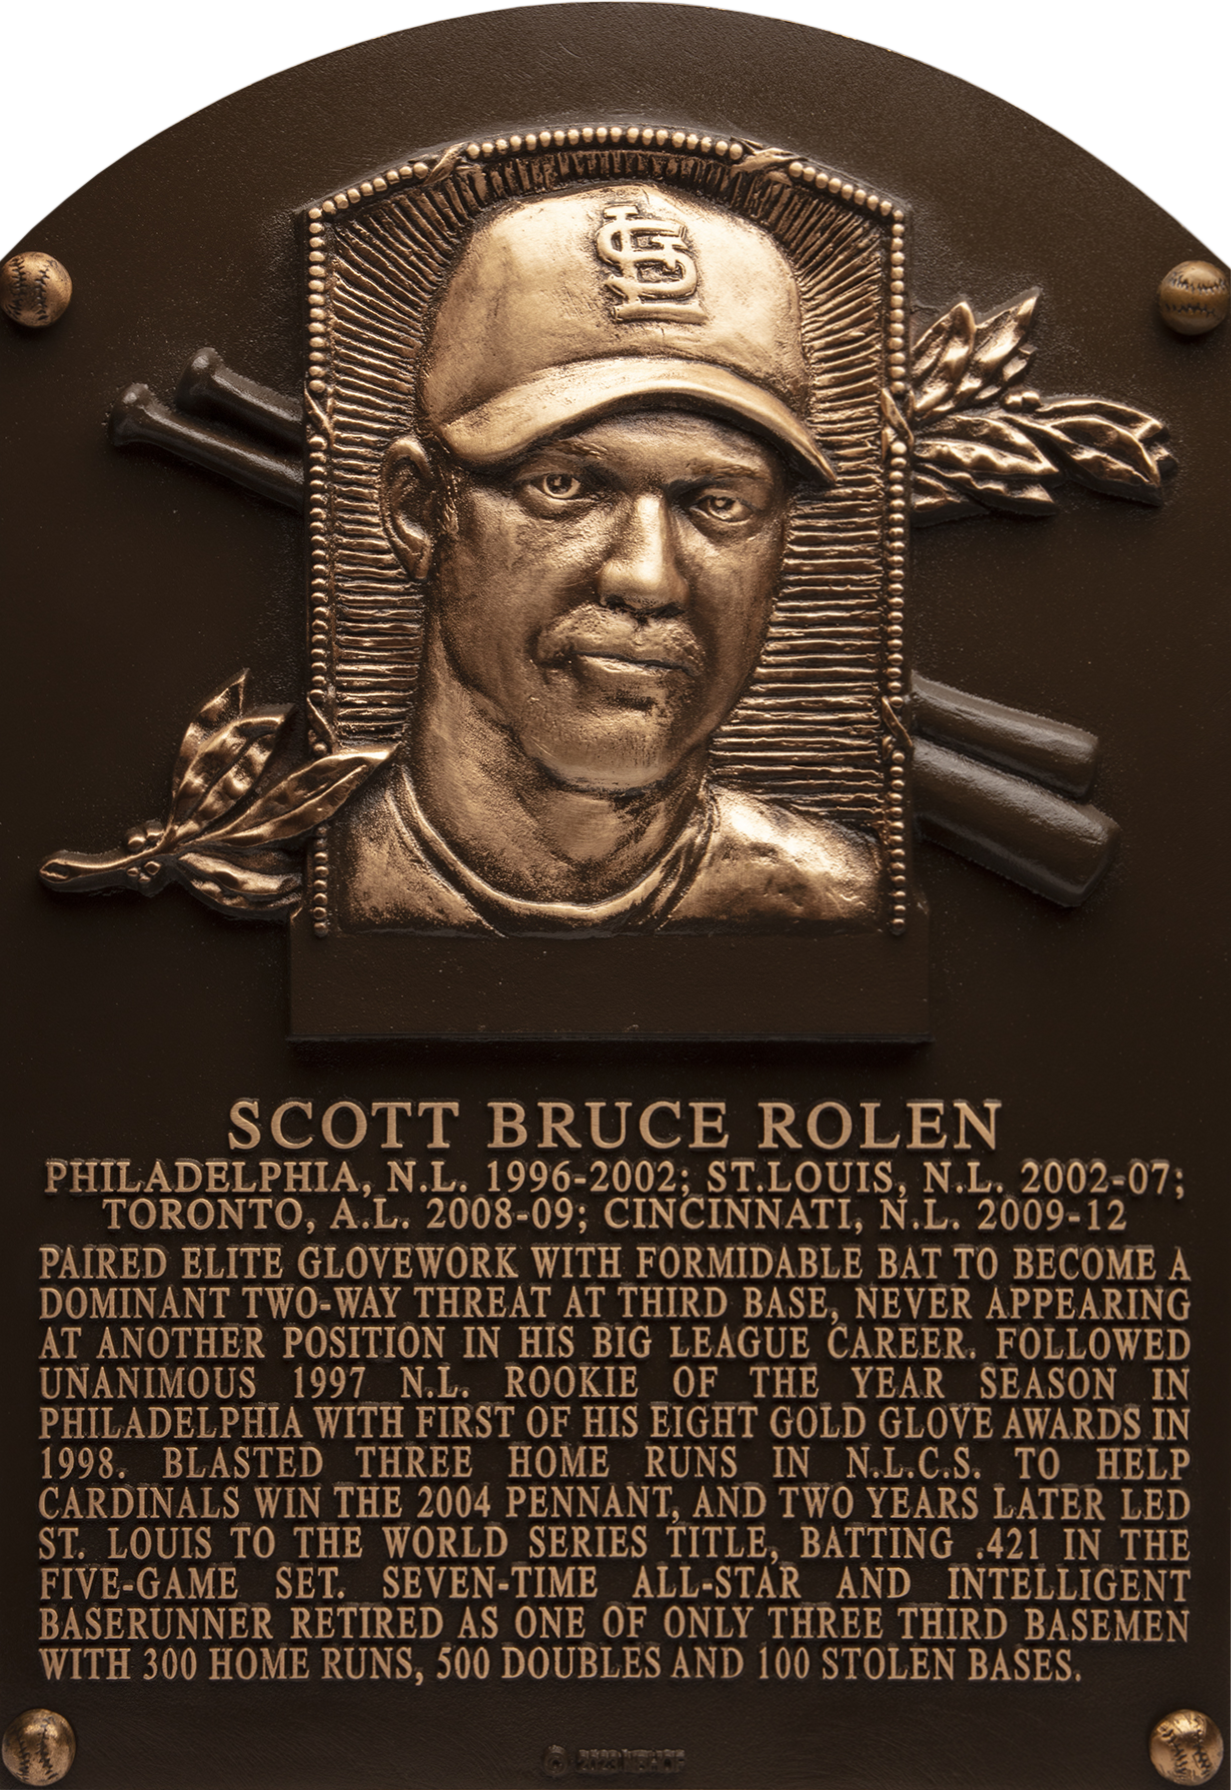 Scott Rolen Hall of Fame plaque